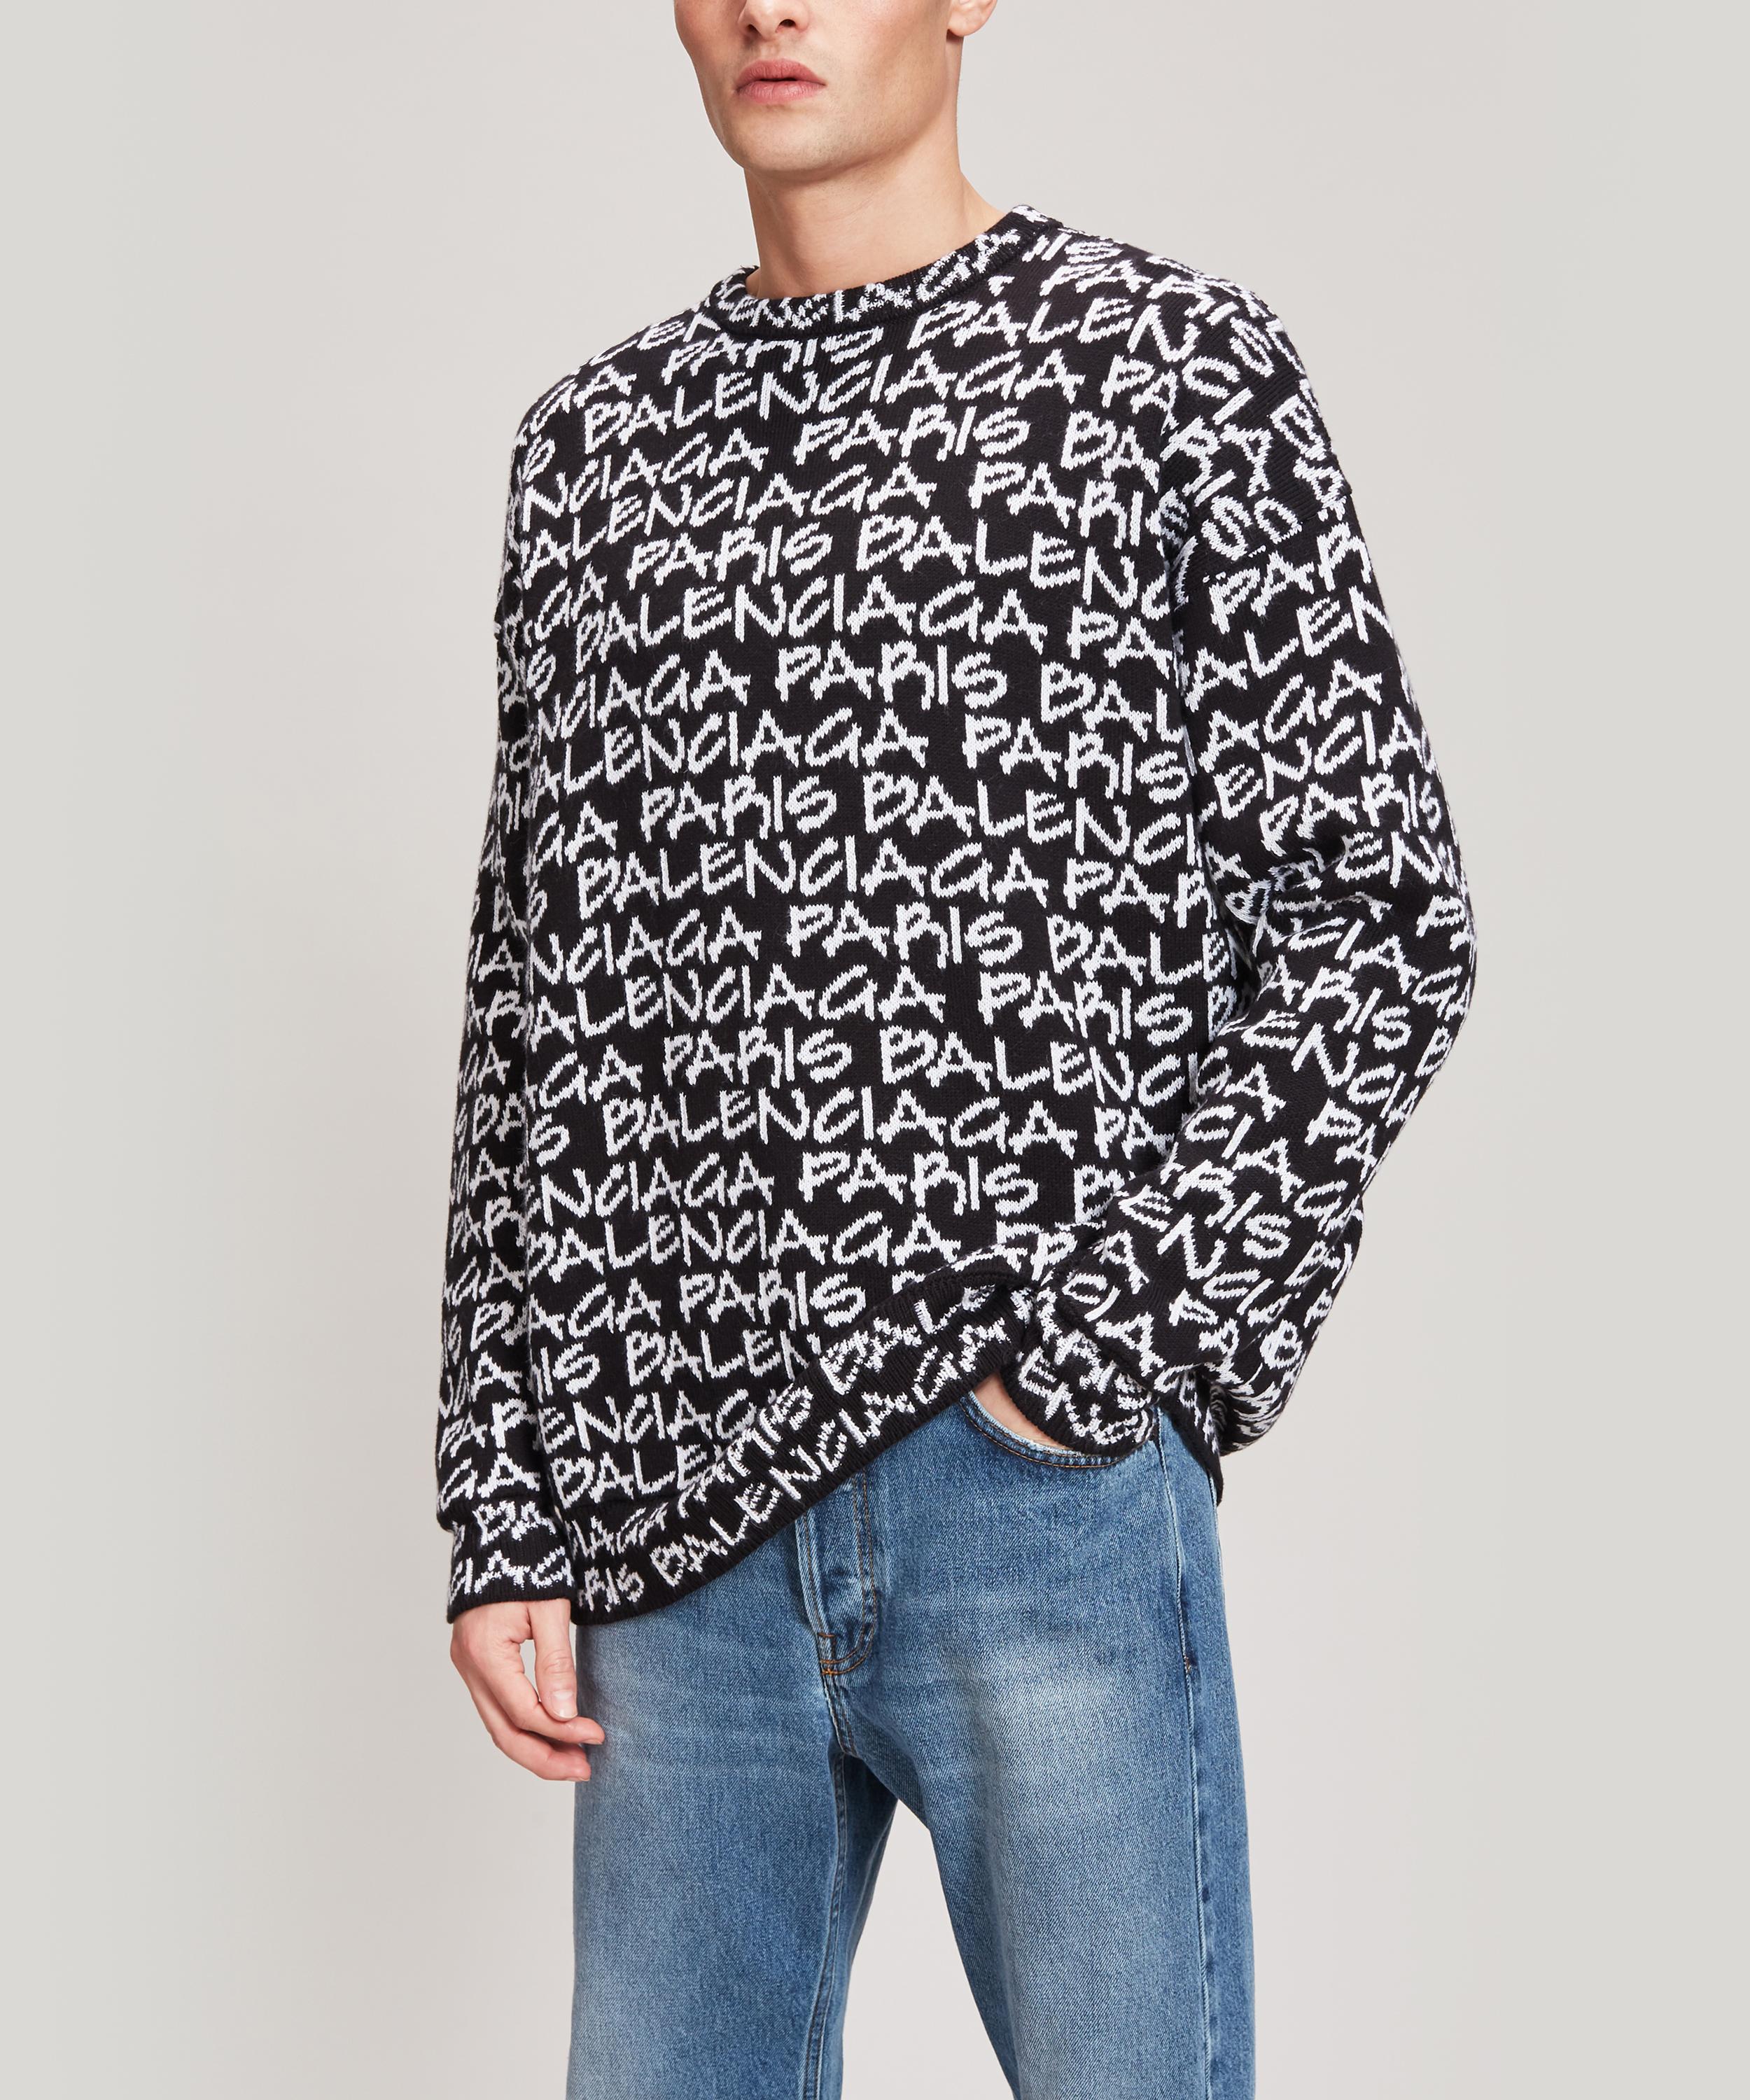 balenciaga logo knit sweater